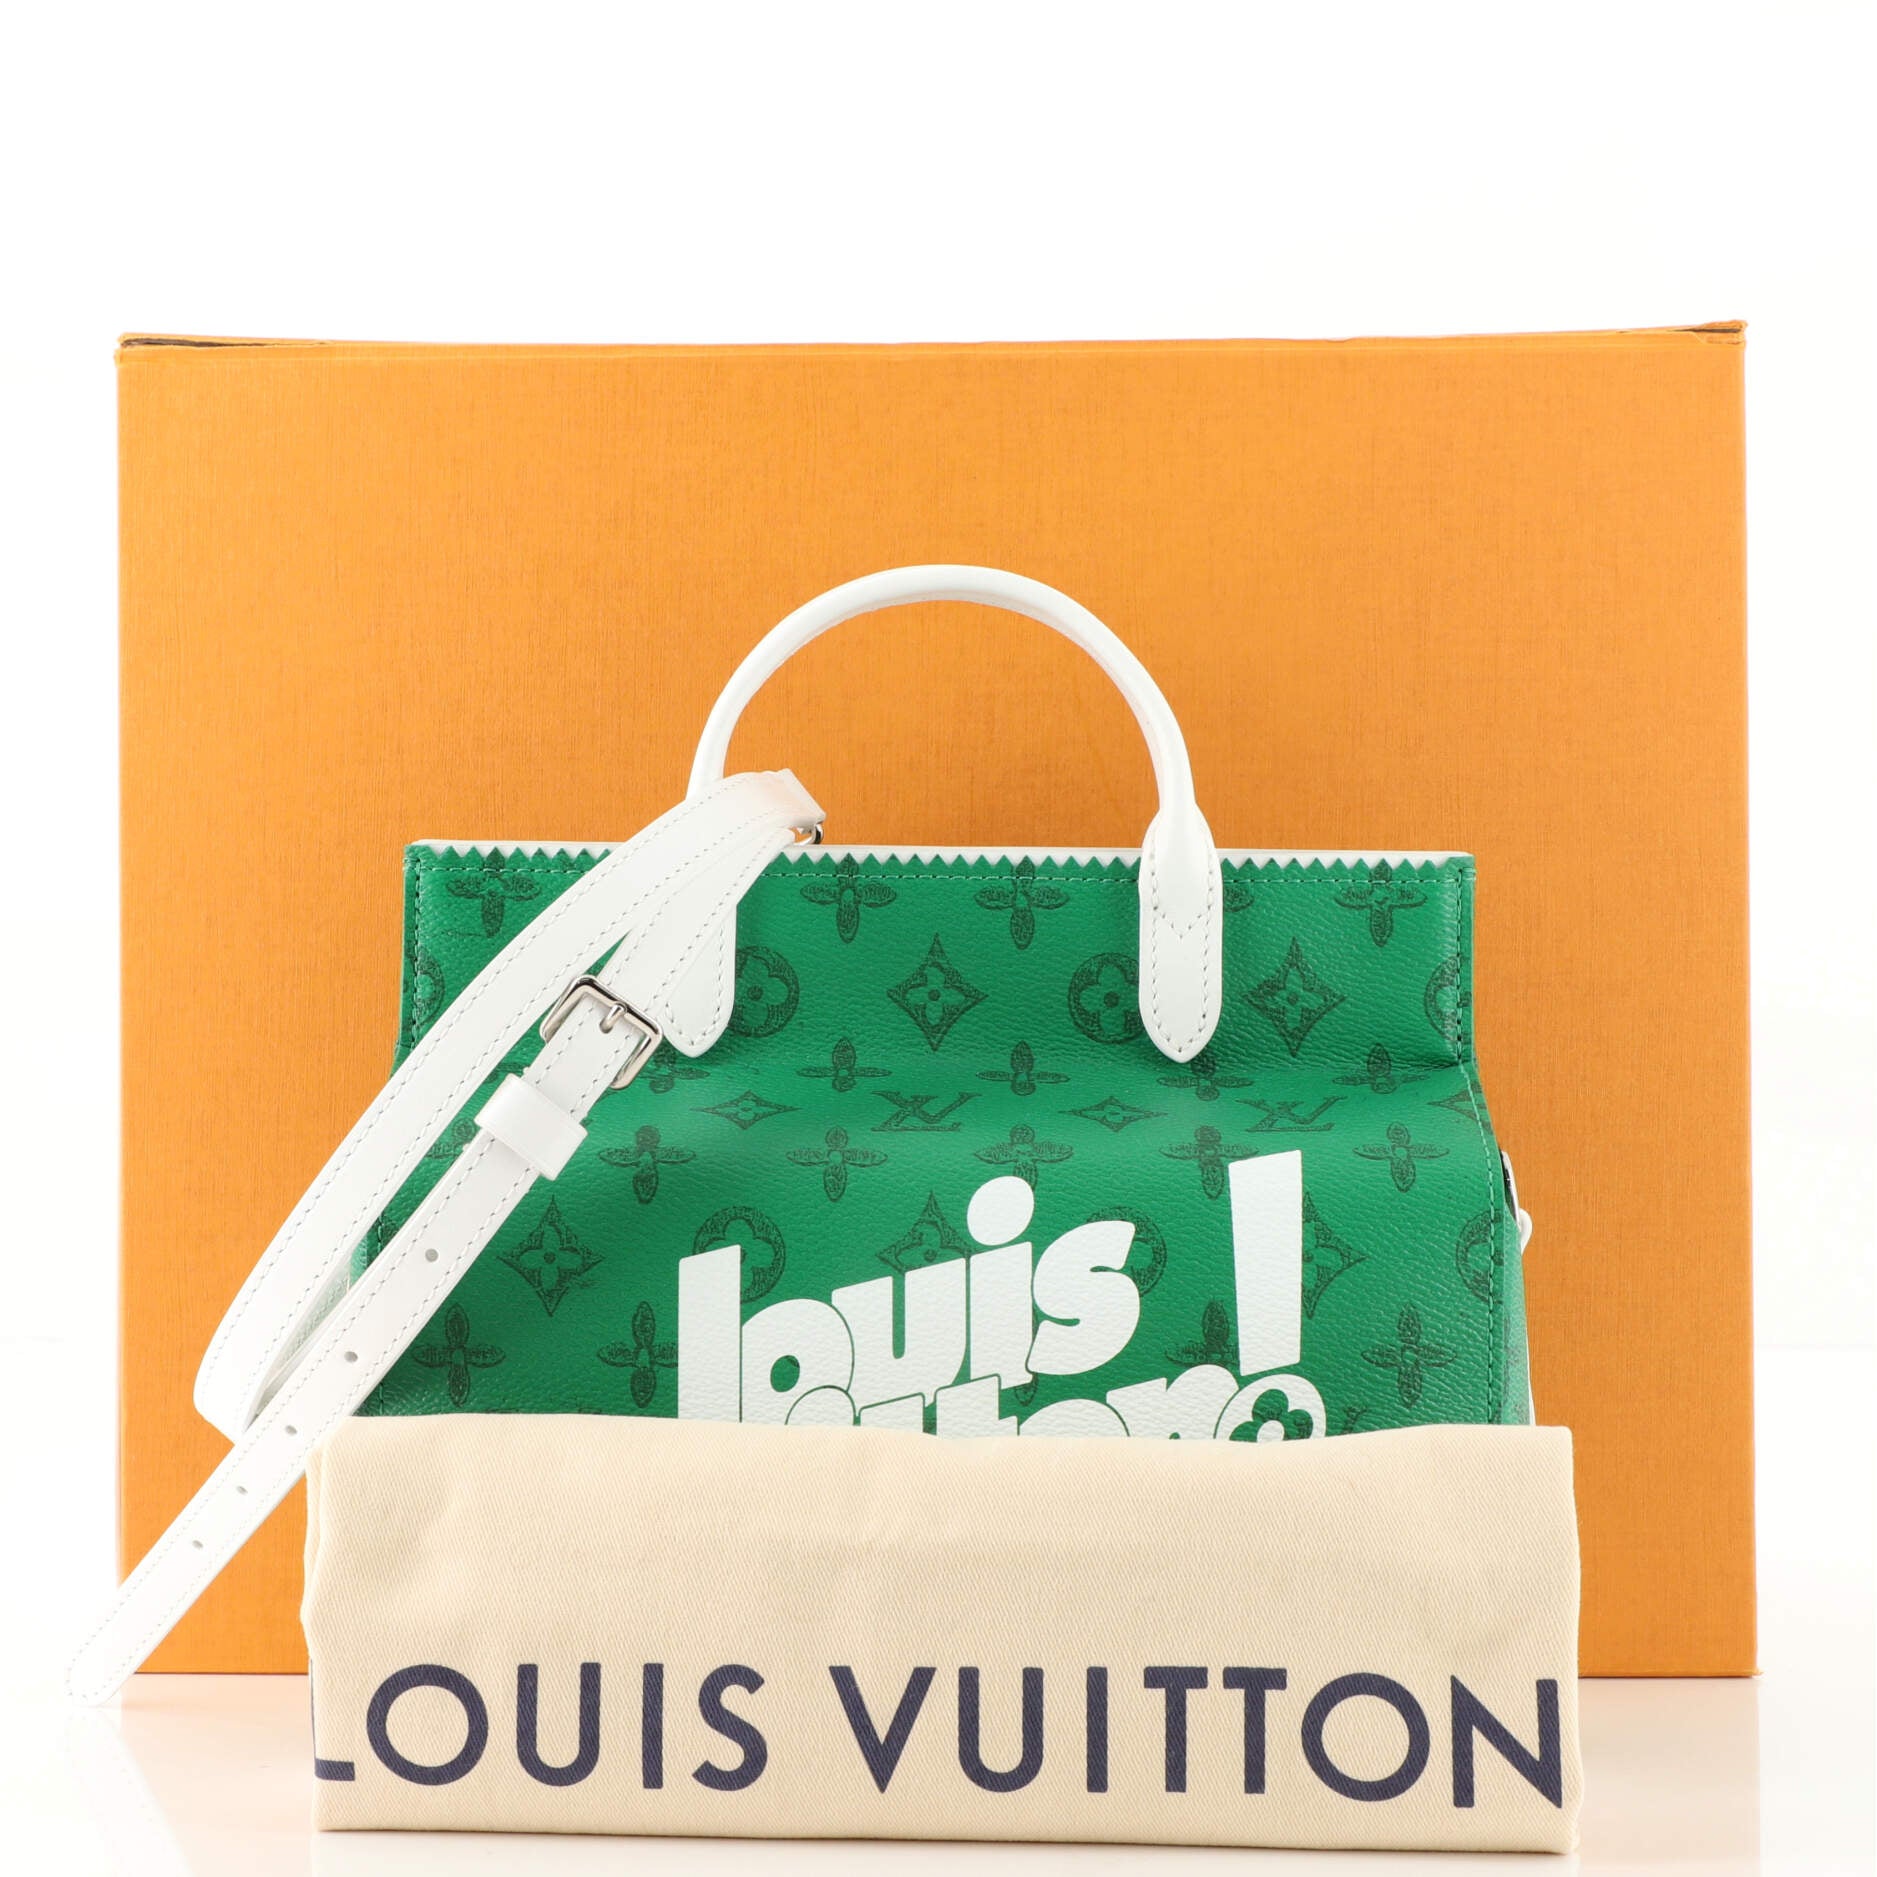 Louis Vuitton, Bags, Louis Vuitton Litter Bag Everyday Signature Vintage  Monogram Canvas Green